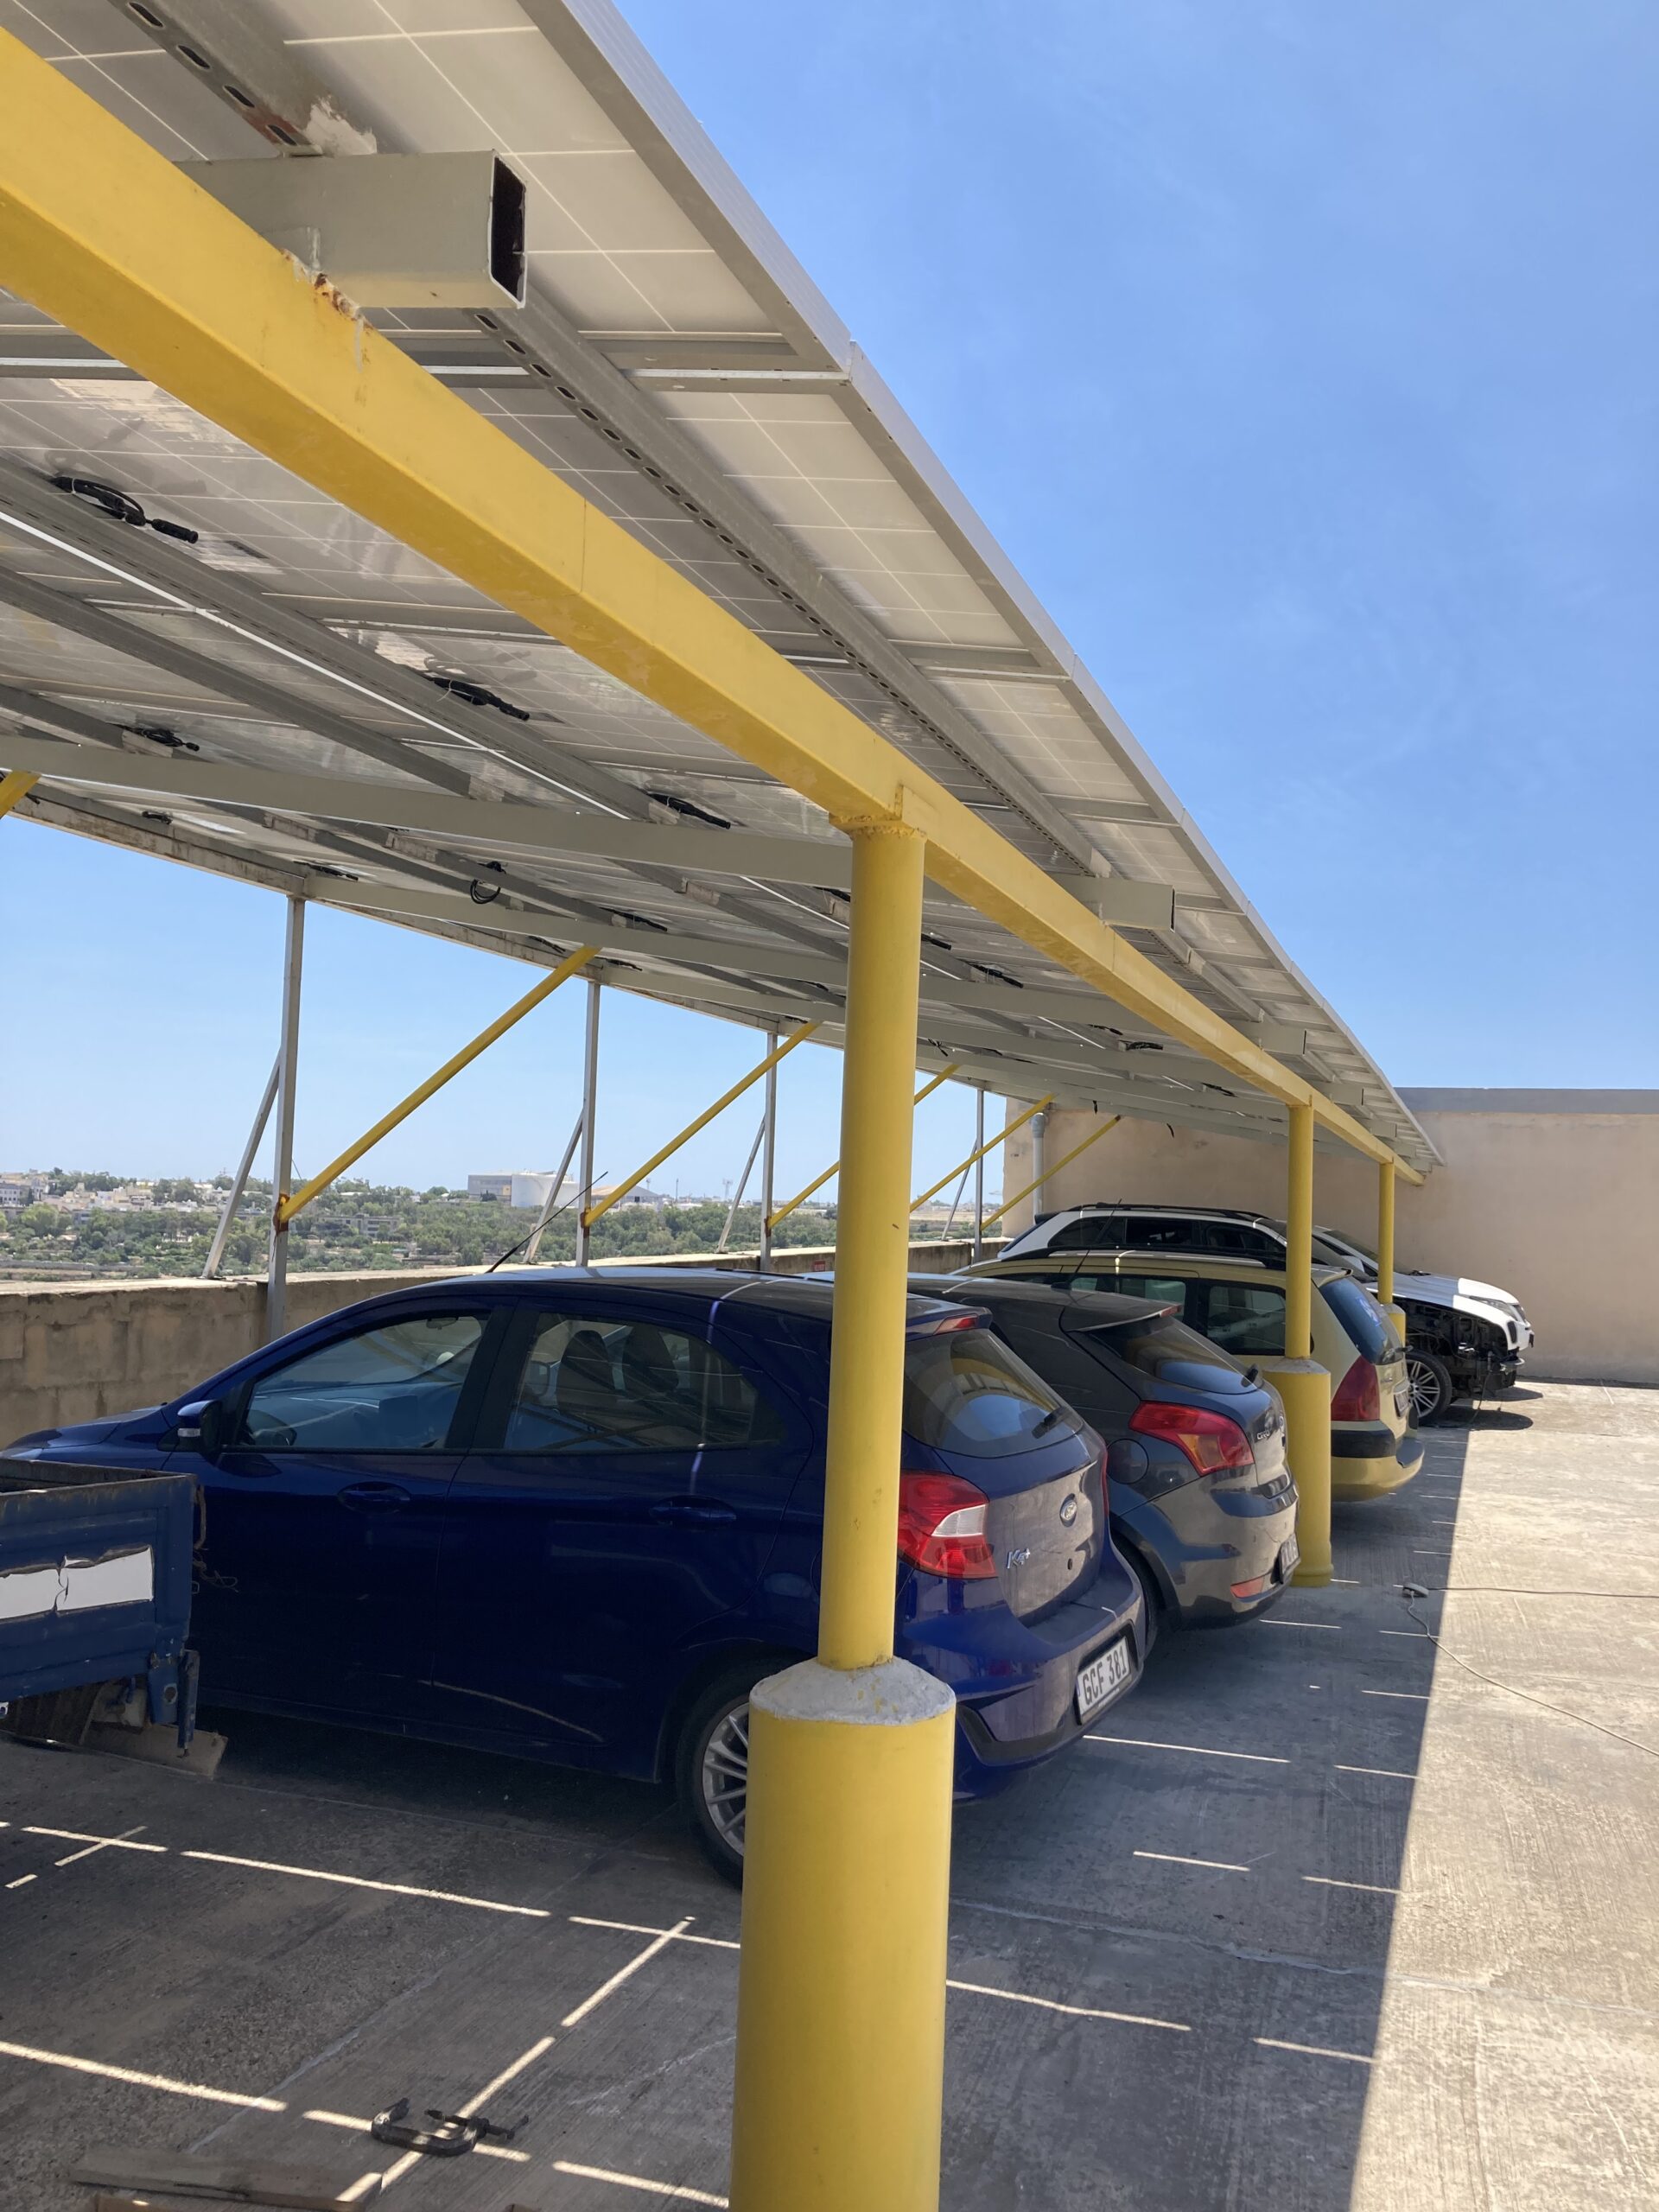 Commercial solar carport